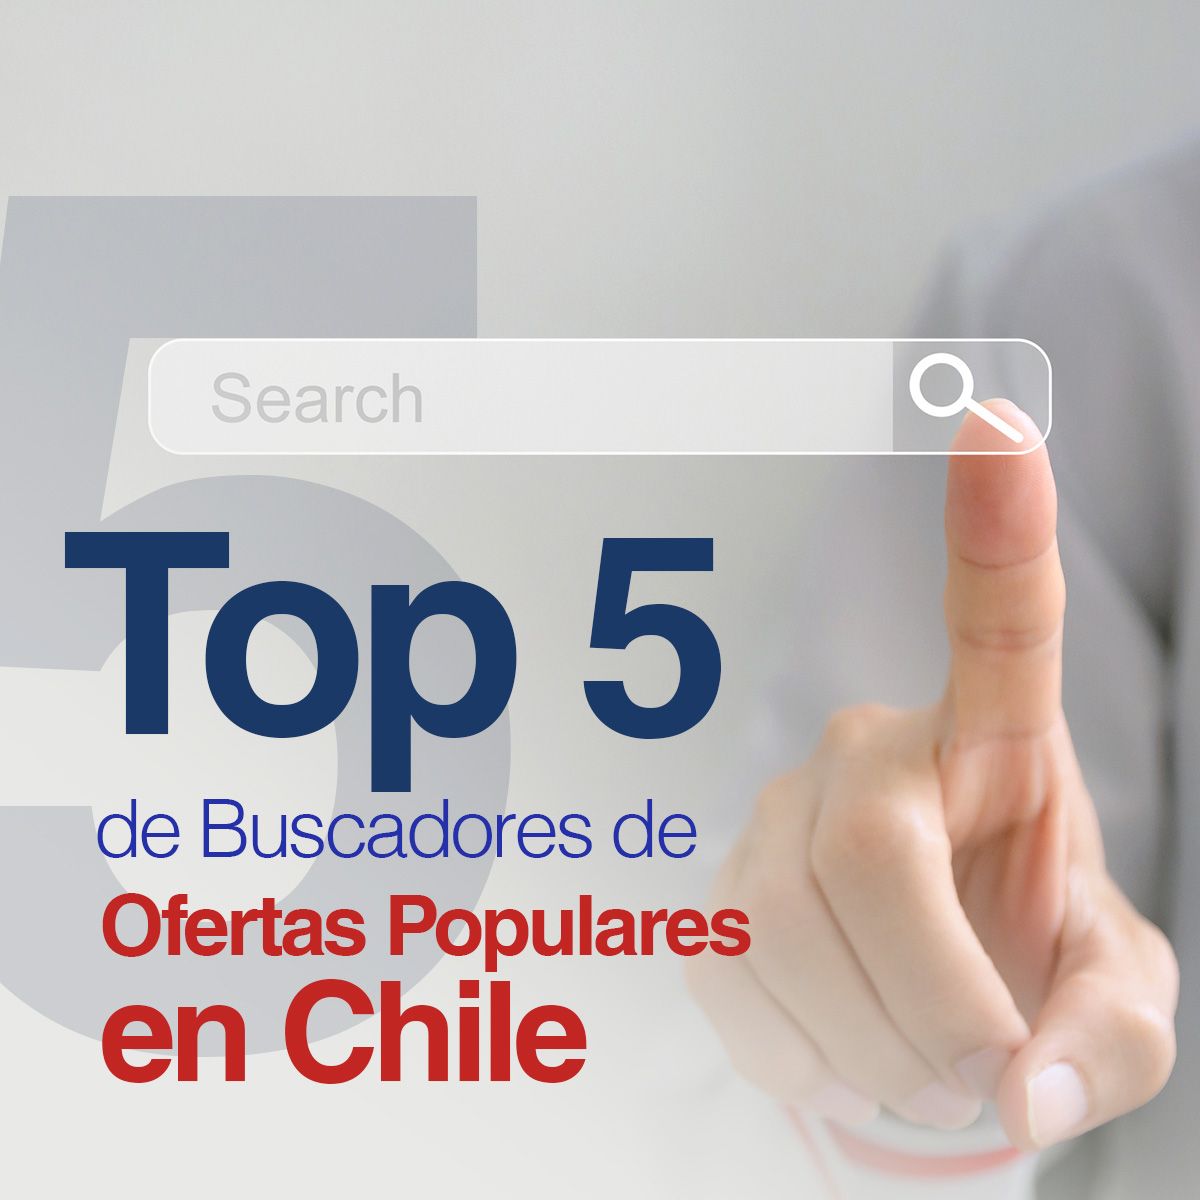 Top 5 de Buscadores de Ofertas Populares en Chile